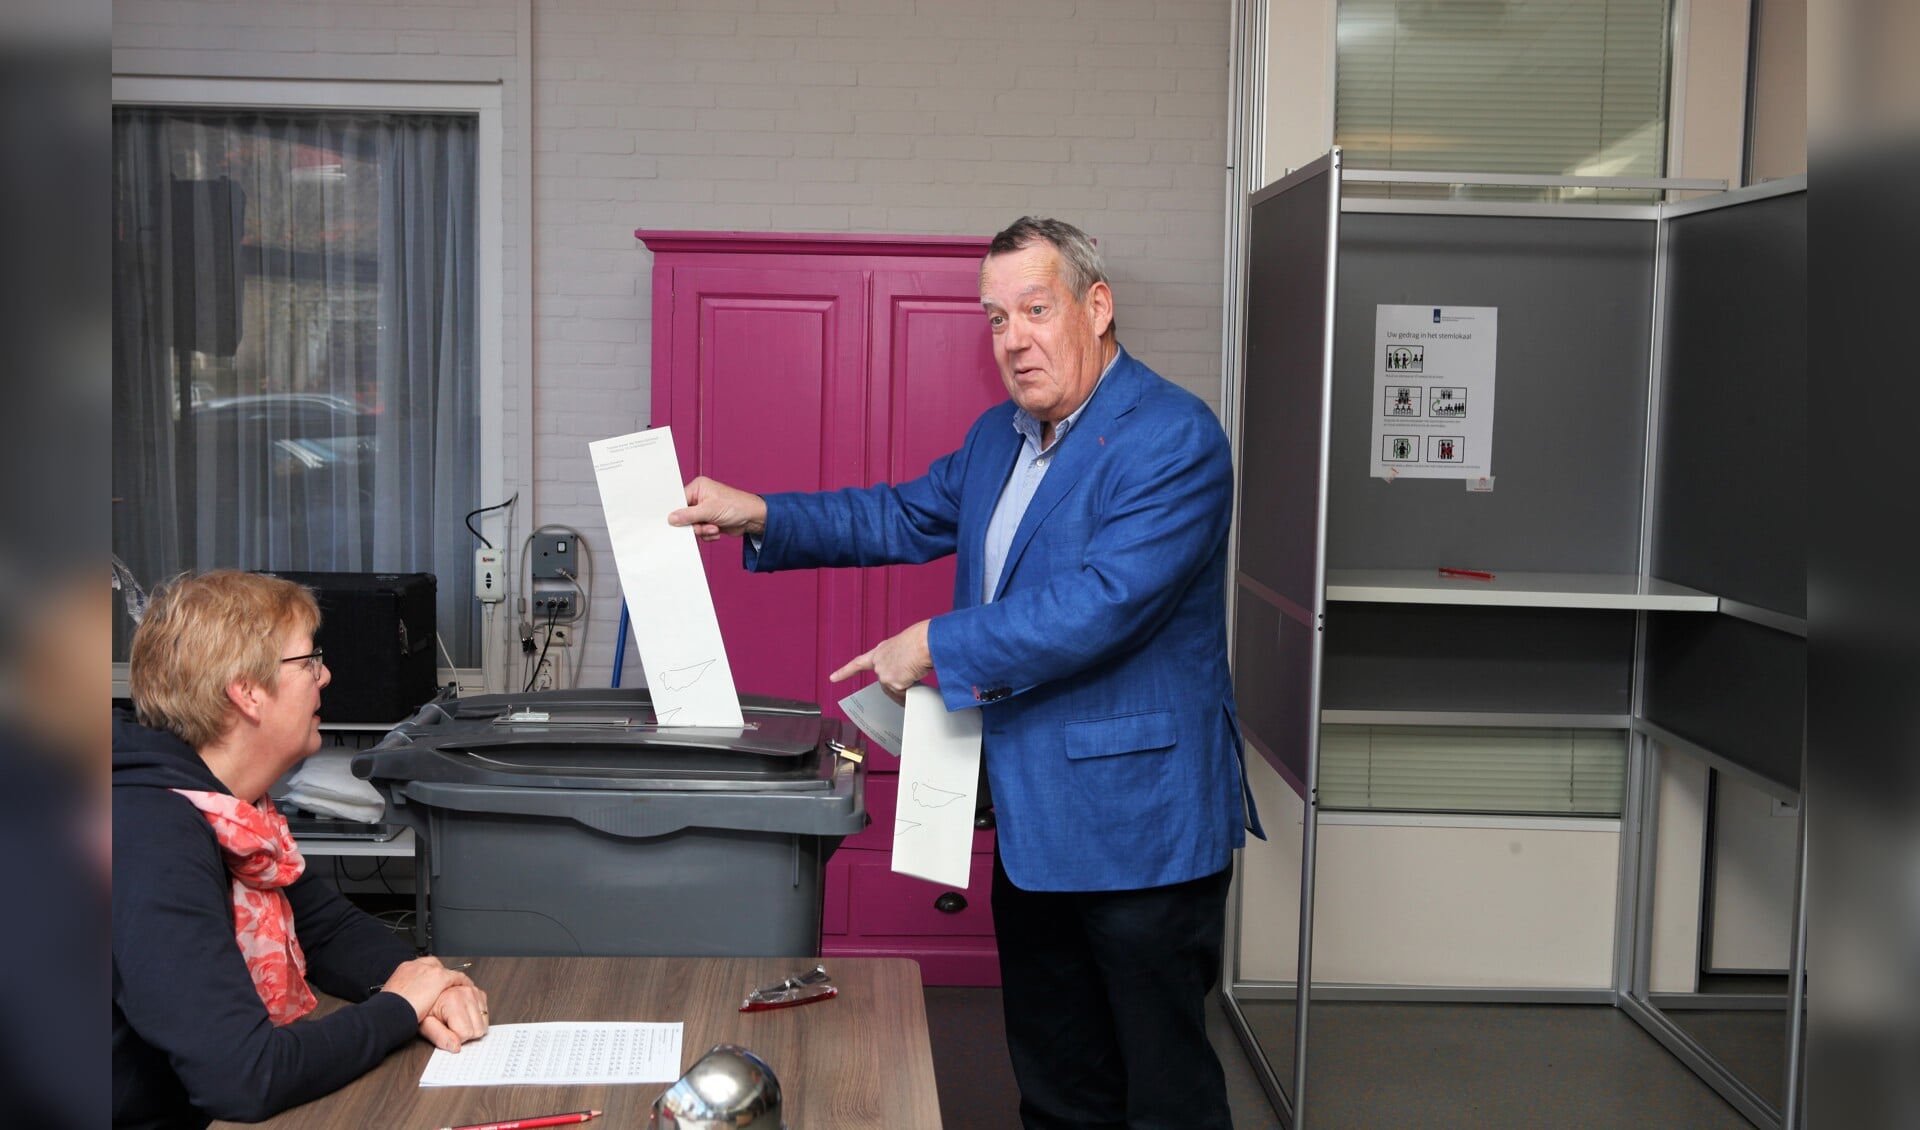 Wethouder Harry van Rooijen stemt voor de Tweede Kamerverkiezingen in 2017.